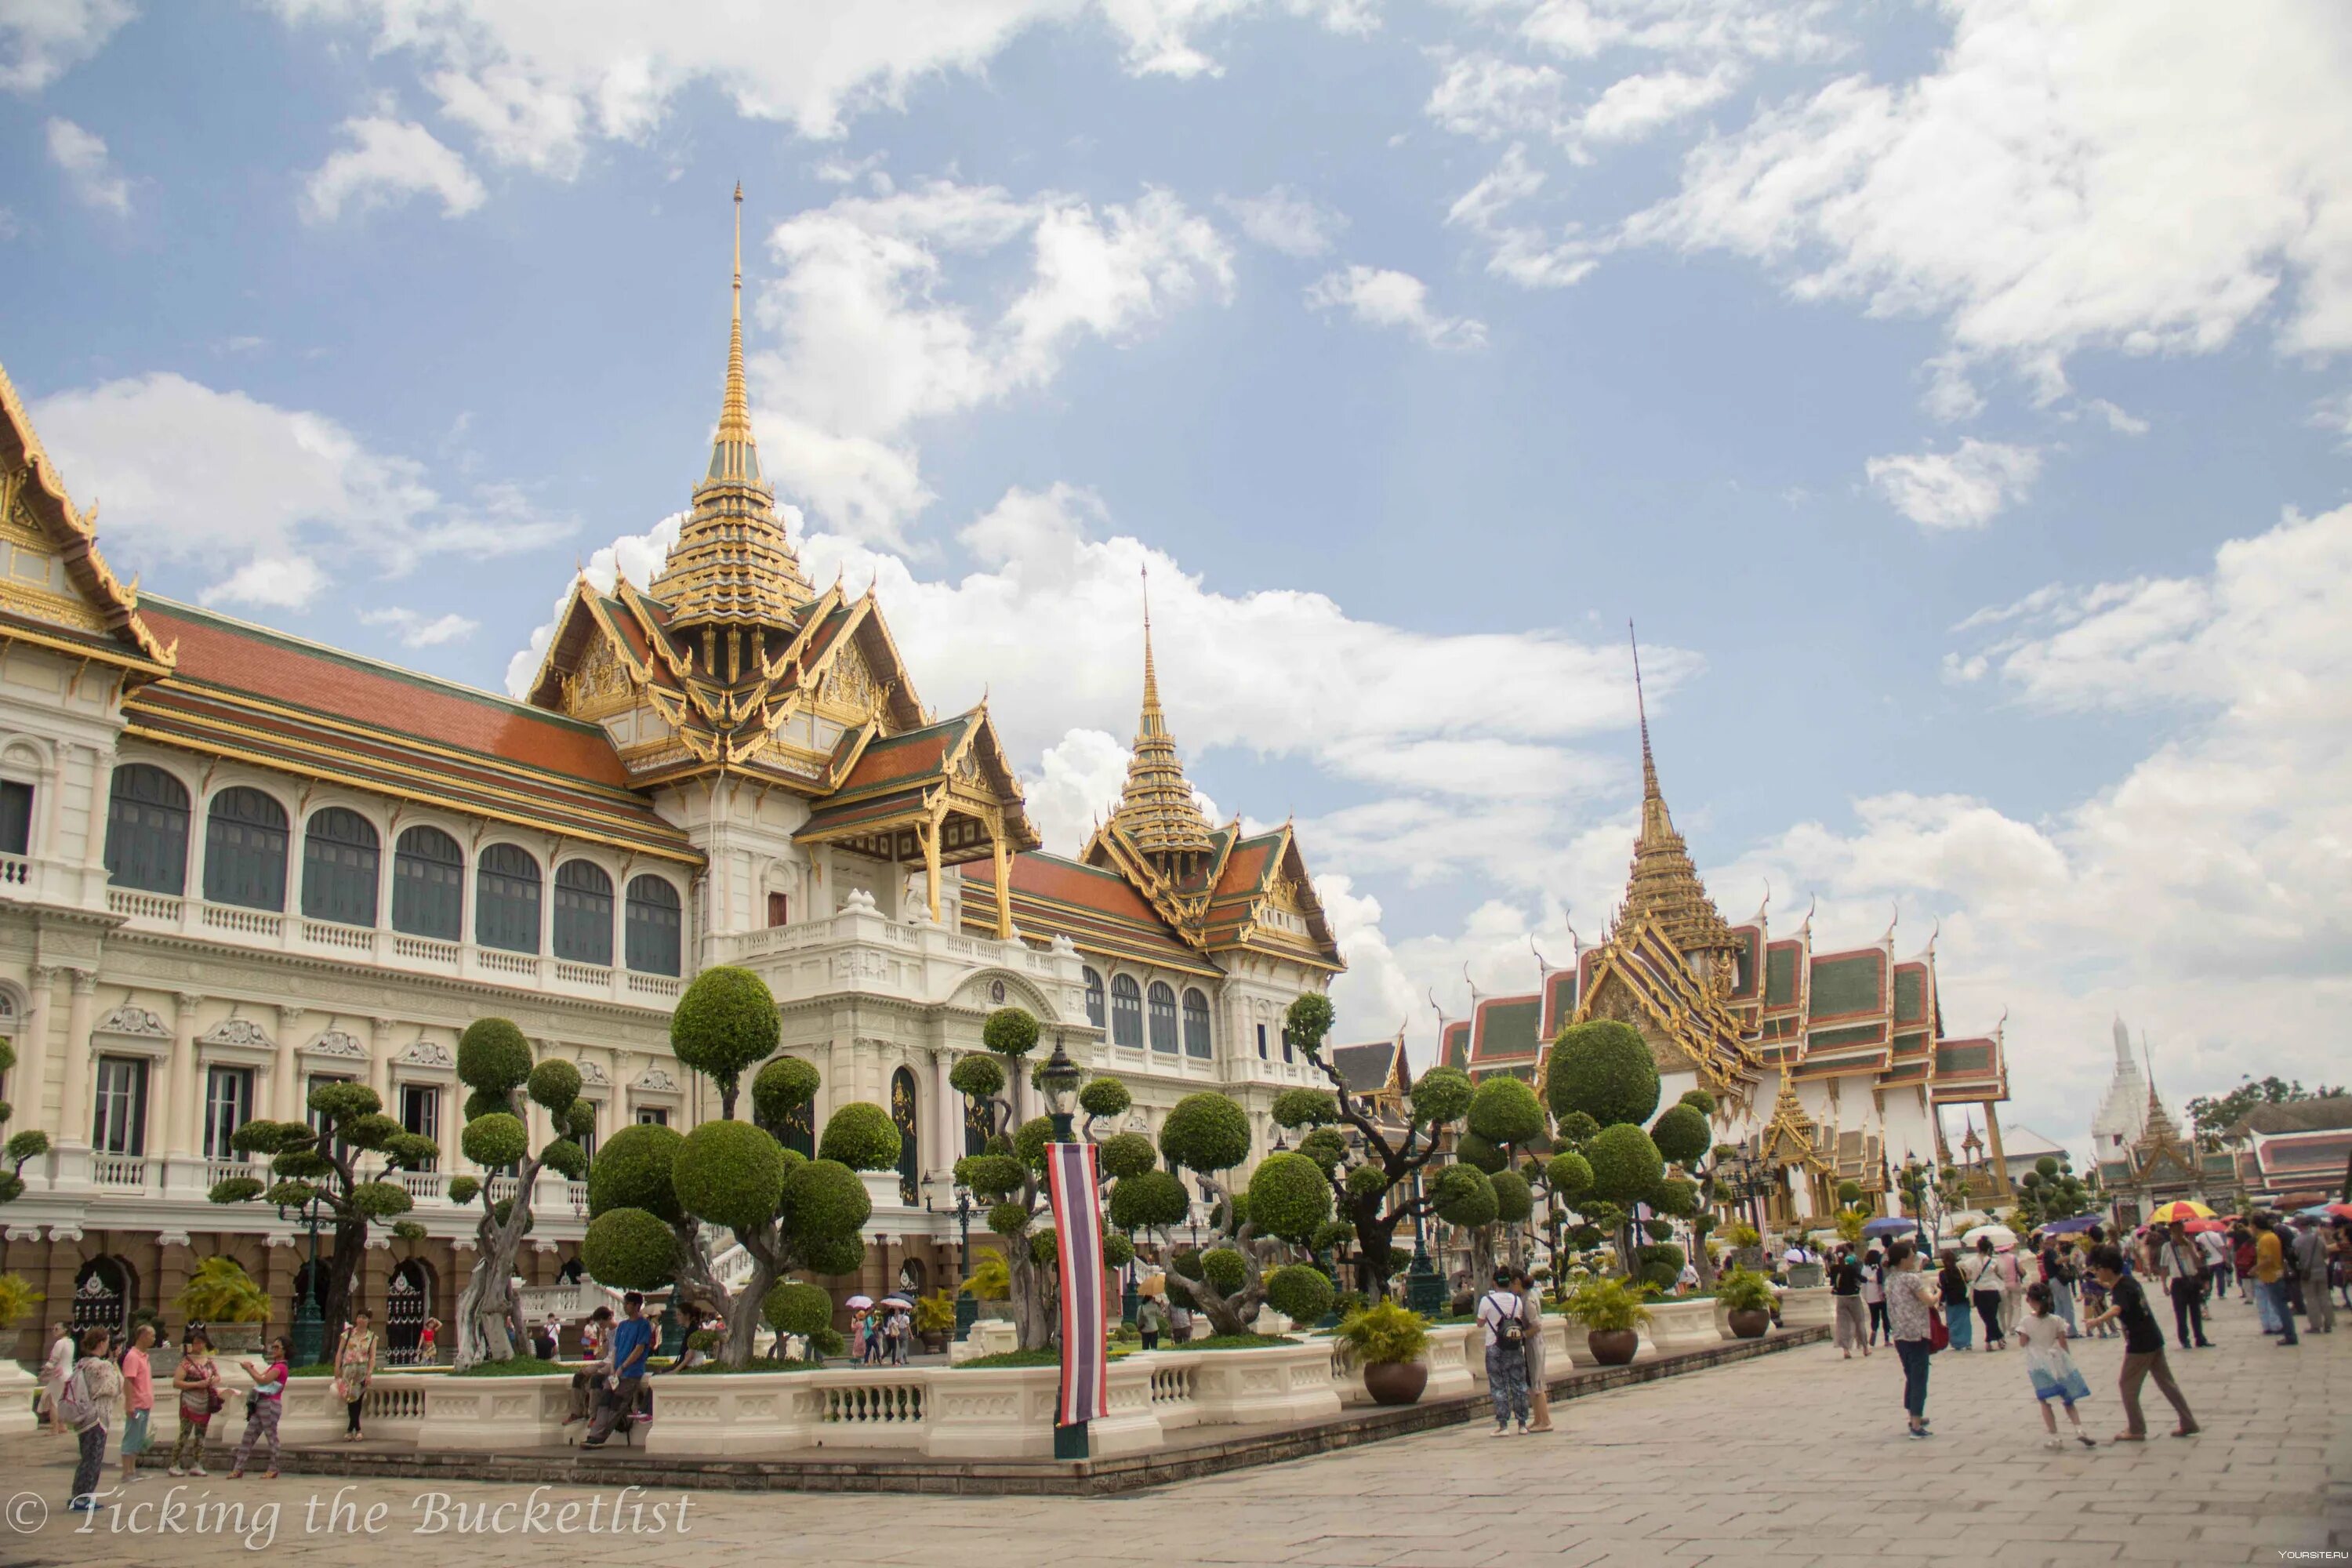 Виды бангкока. Королевский дворец в Бангкоке. Столица Тайланда. Бангкок столица Таиланда. Королевский дворец — резиденция тайского короля Бангкок.